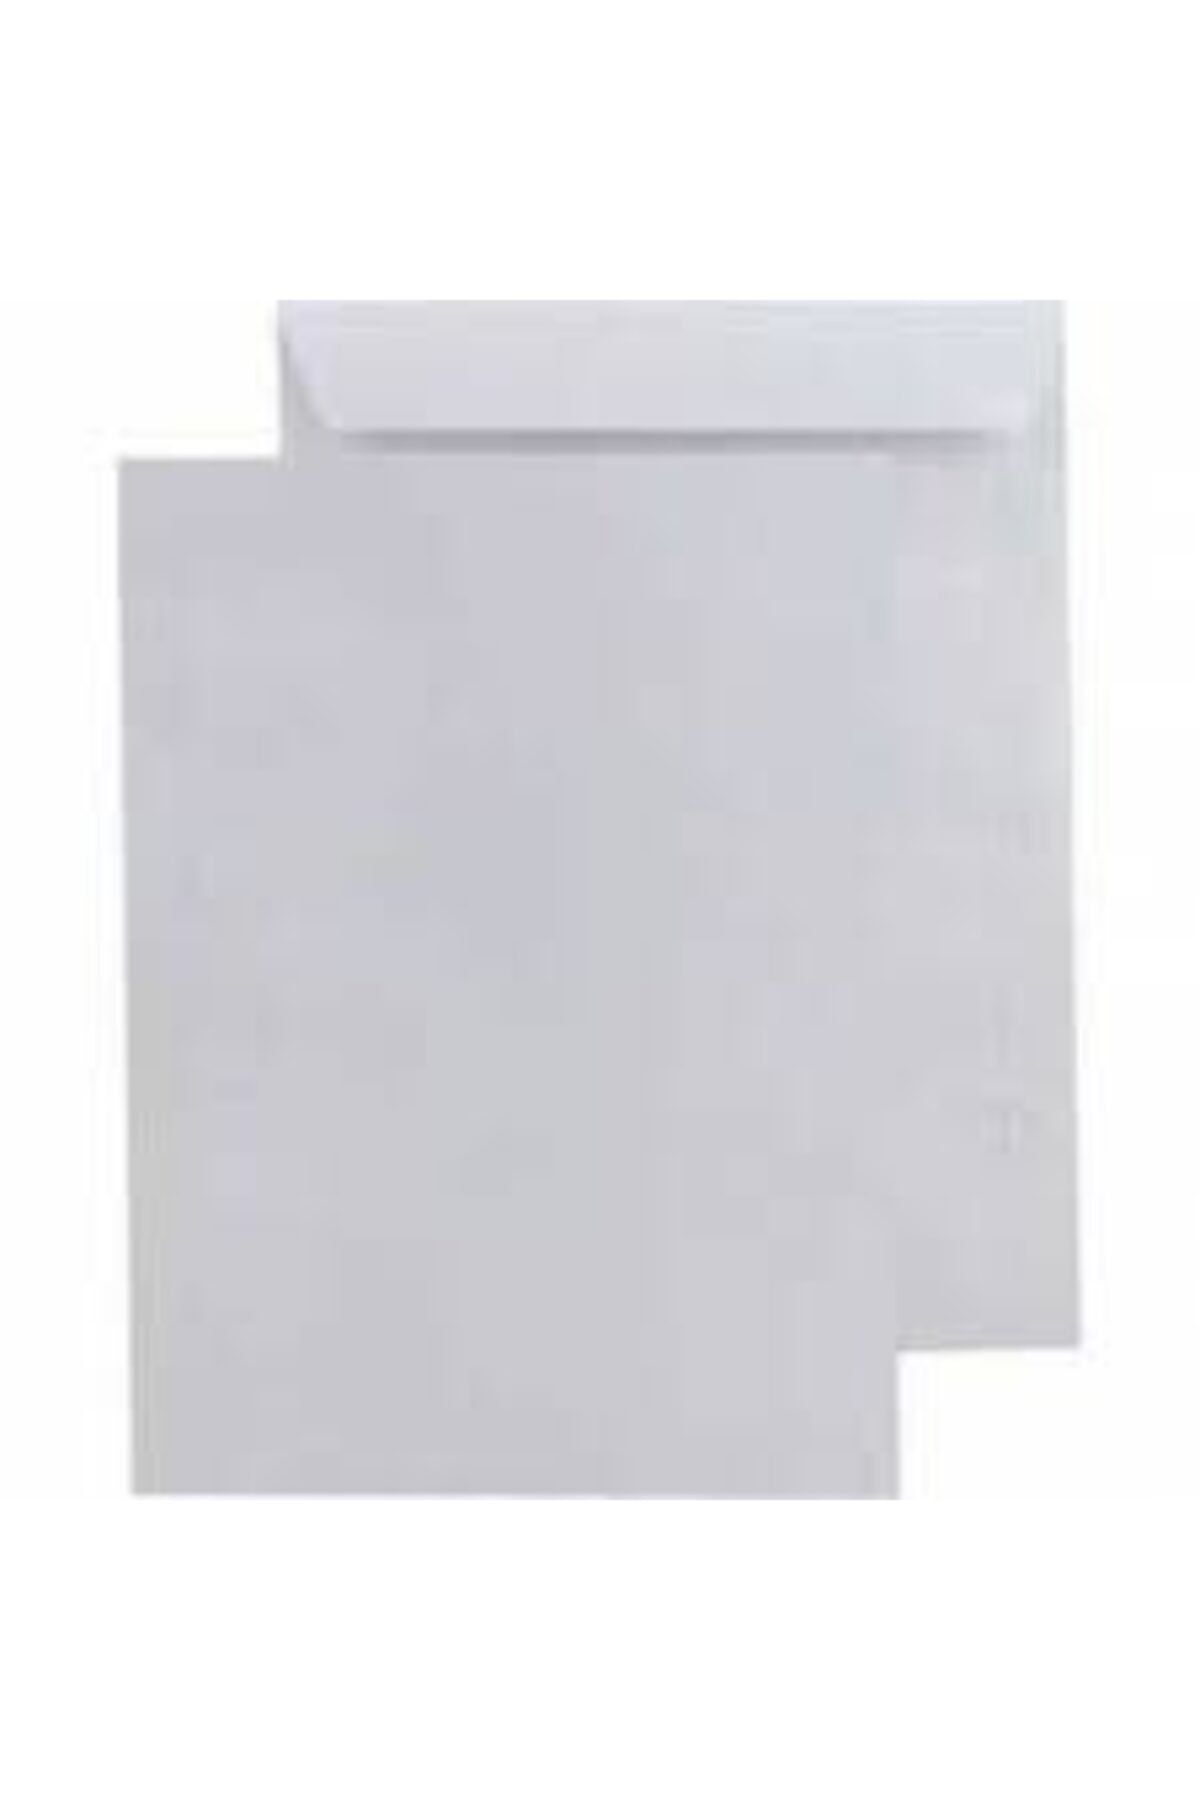 Zarfsan Torba Zarf (24x32) Beyaz 110 Gr-silikonlu 100 Lü Paket